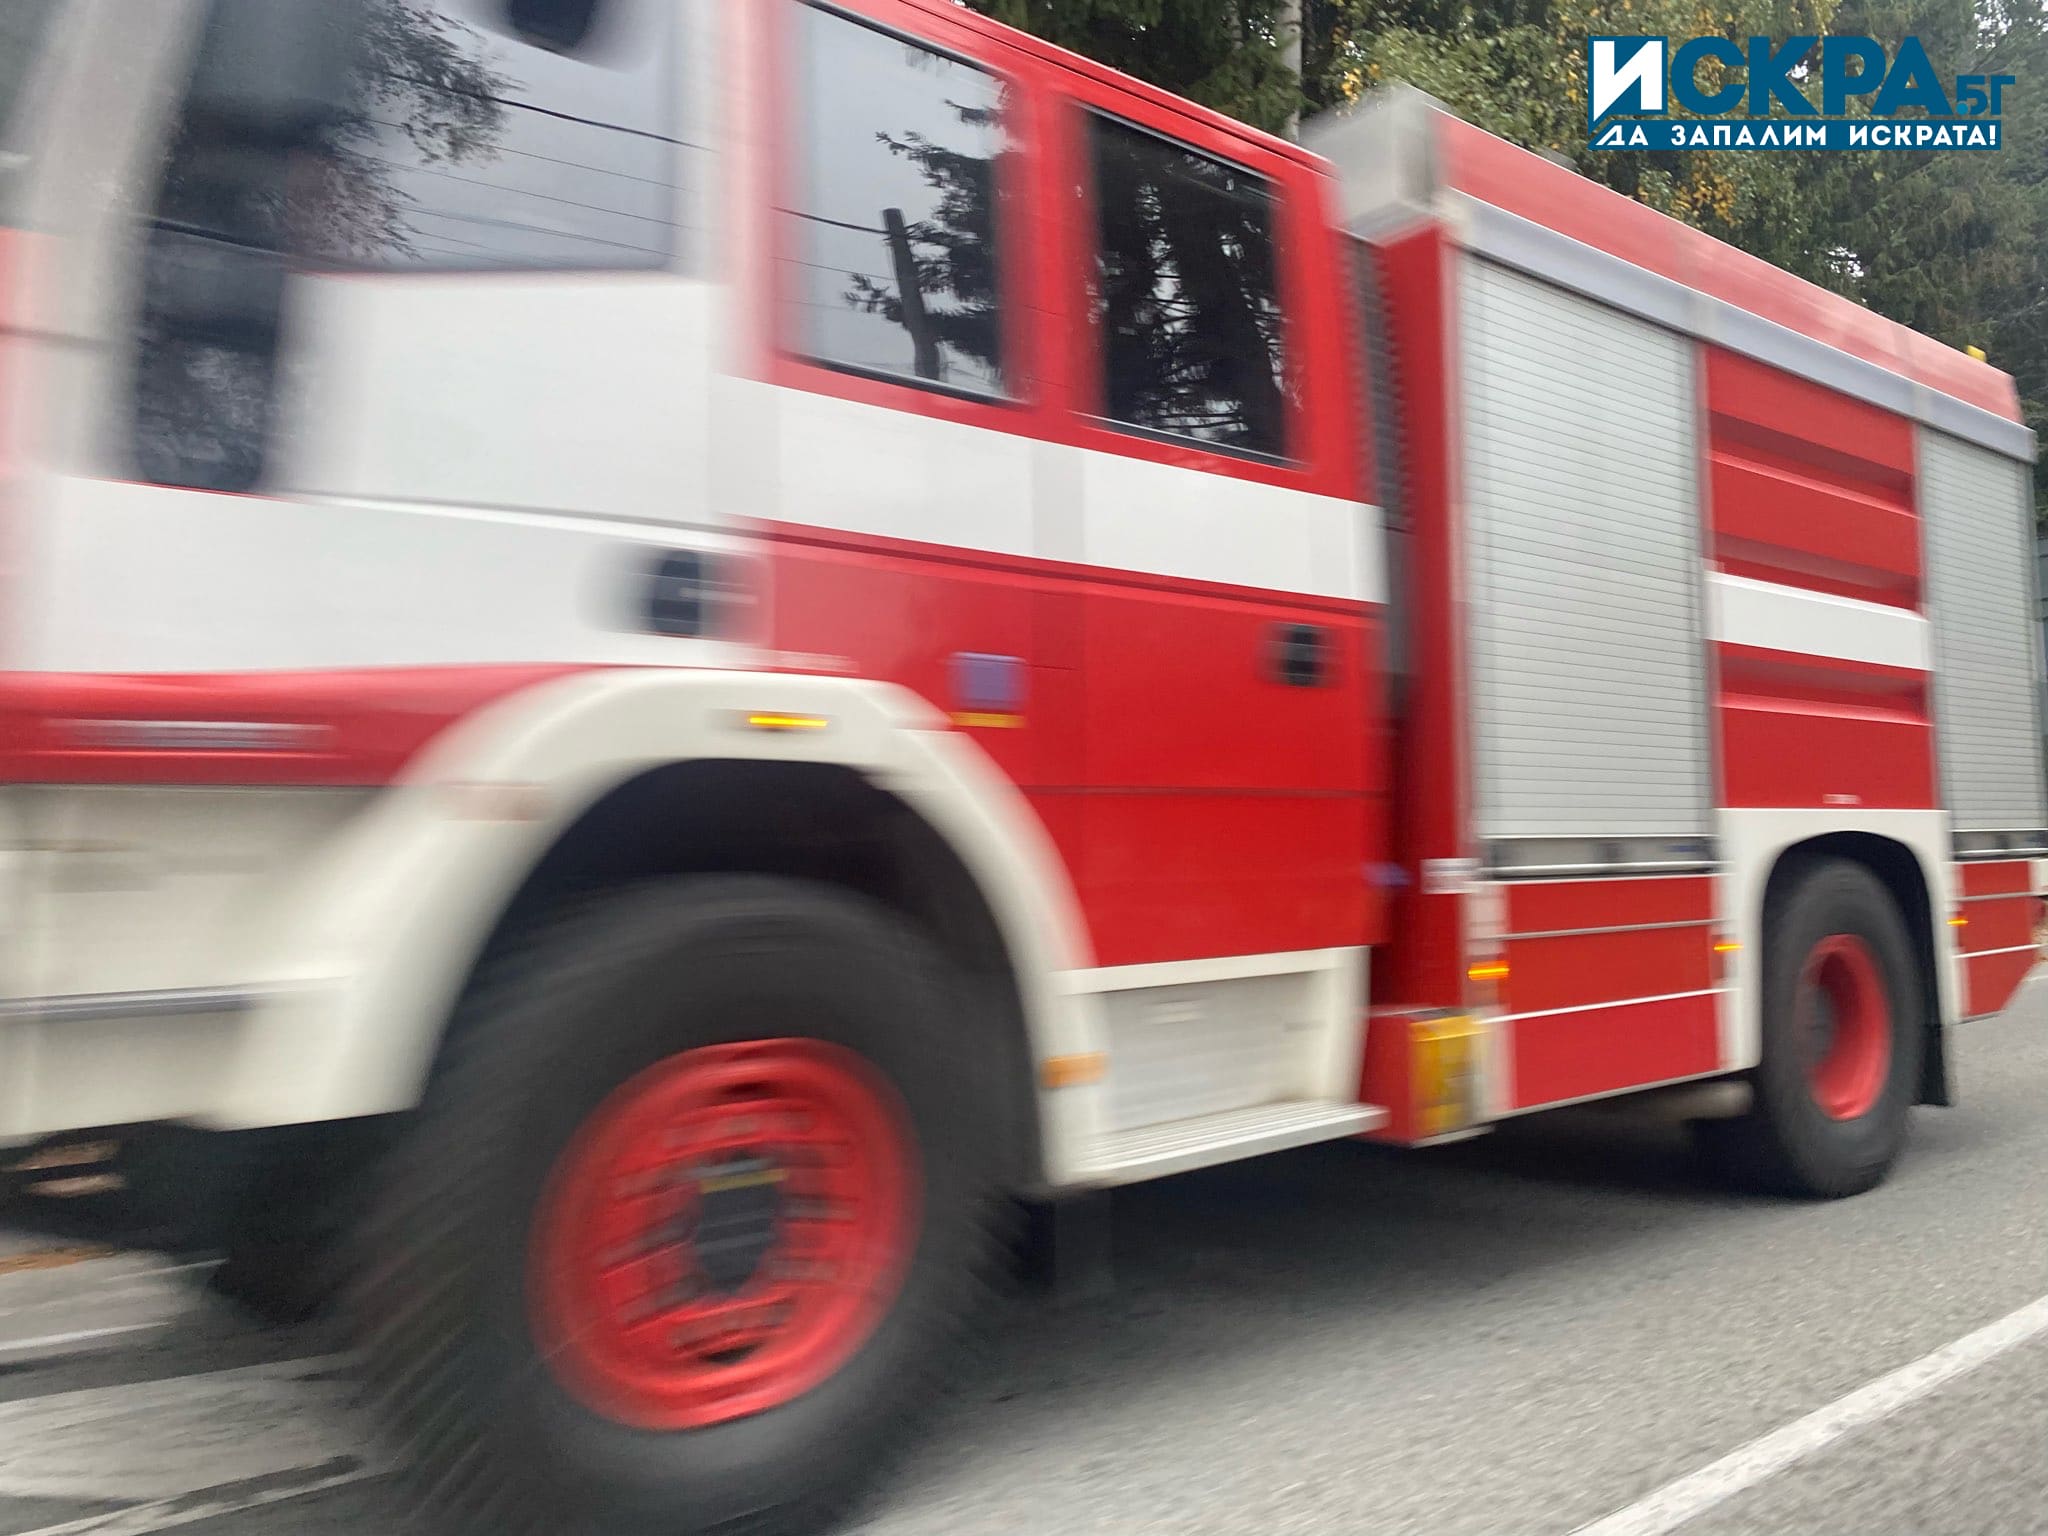 57-годишен мъж е тежко пострадал при огромен пожар във Варна.